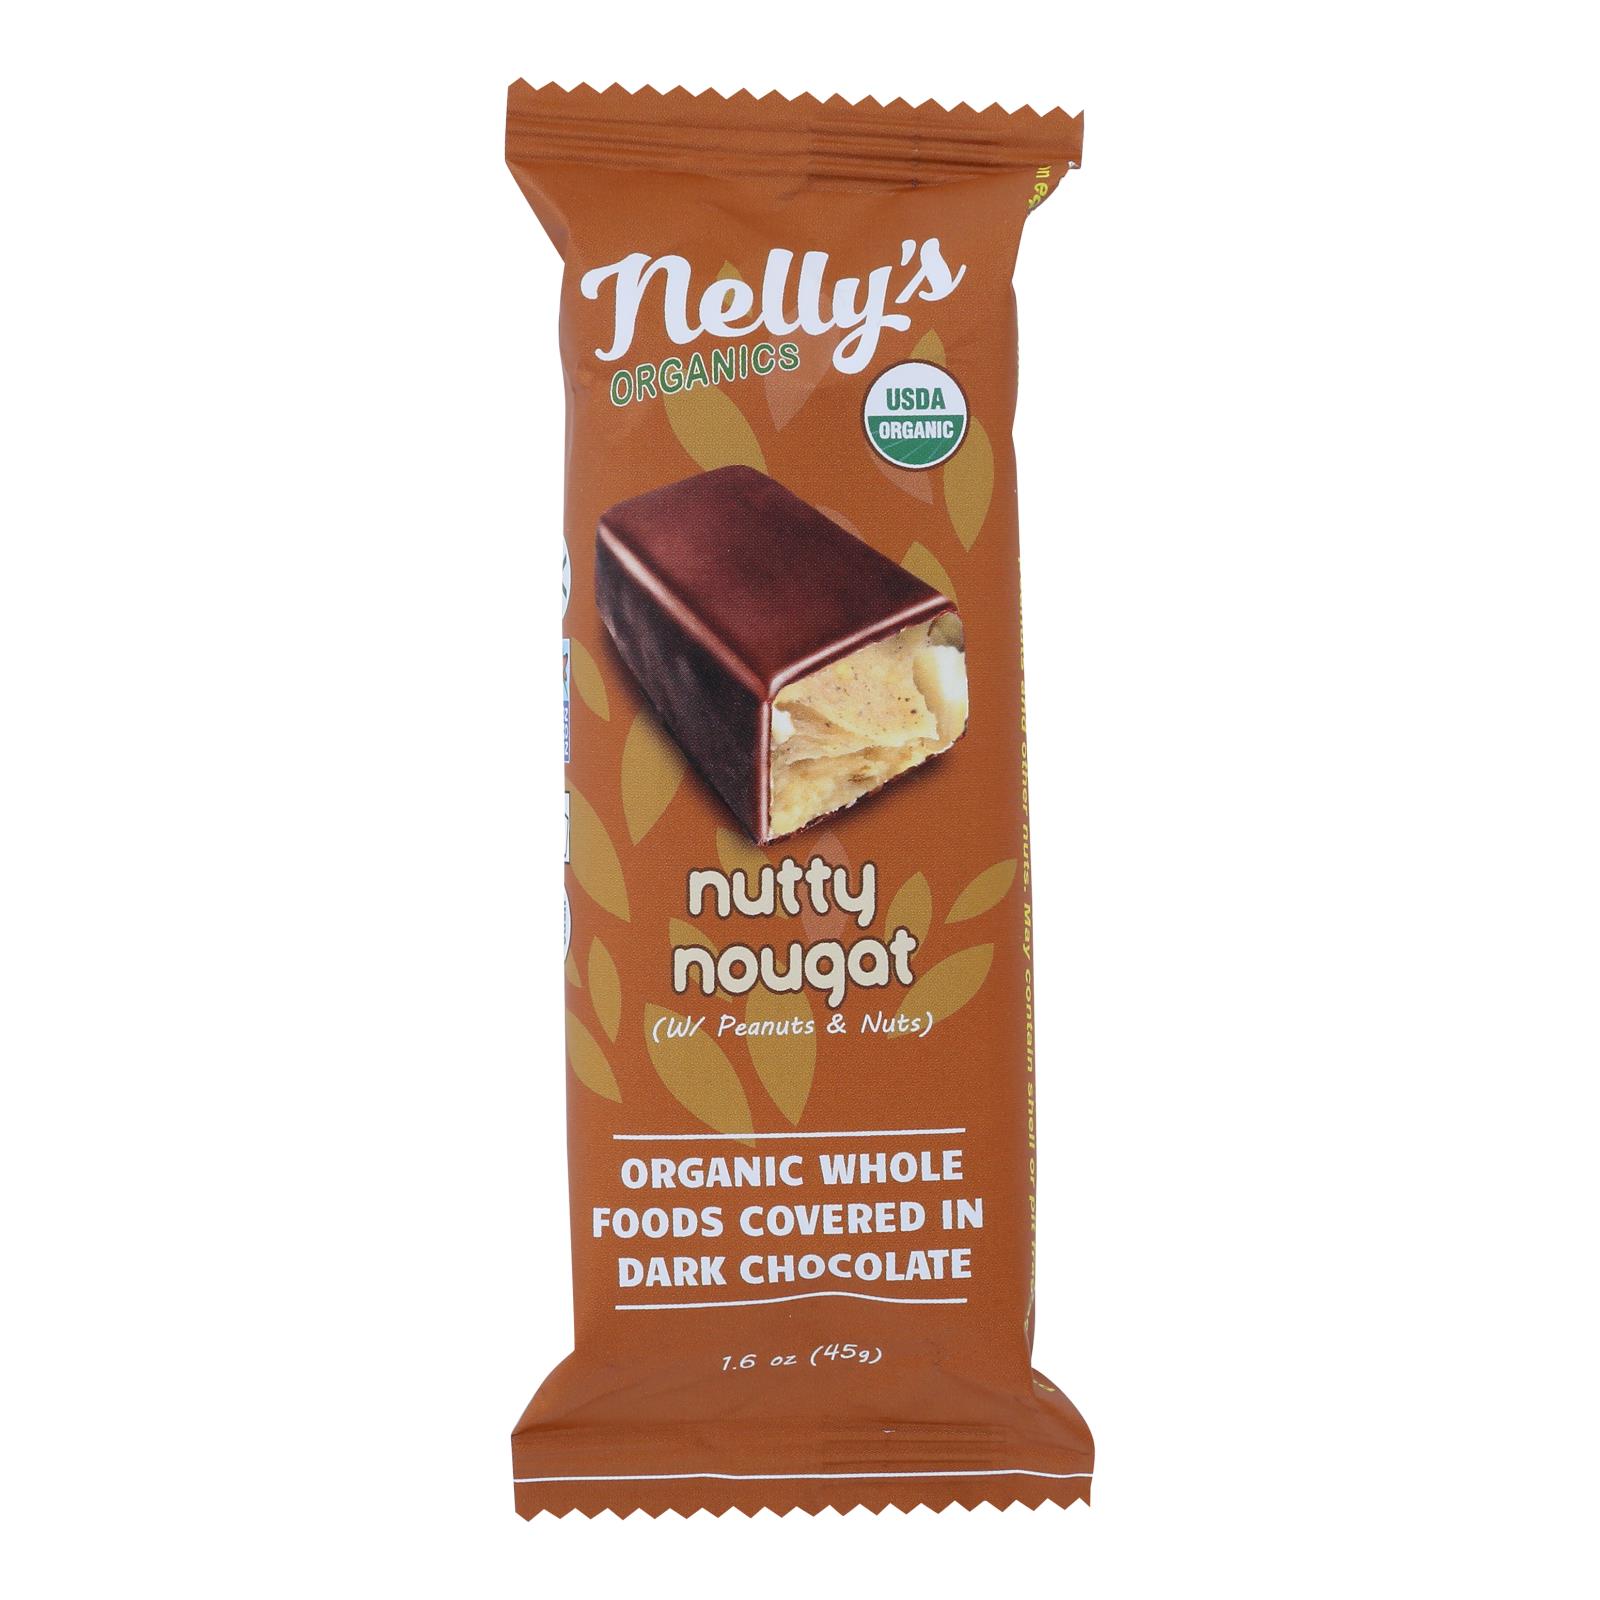 Nelly's Organics Nutty Nougat Bar - 9개 묶음상품 - 1.6 OZ